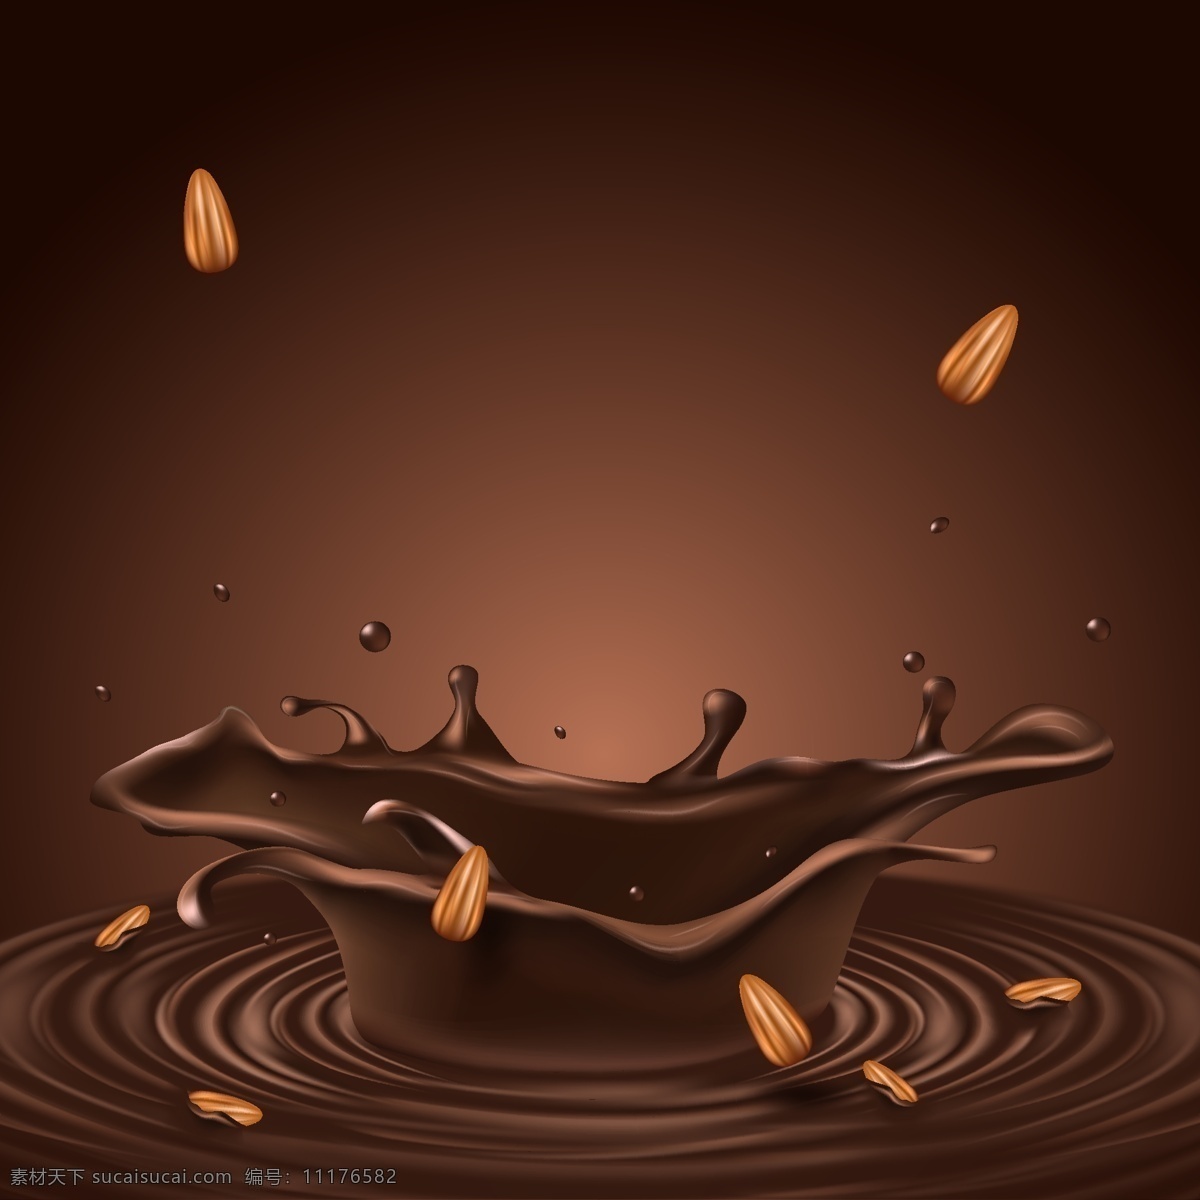 动感 水花 波纹 巧克力 食品 背景 巧克力背景 食品背景 巧克力广告 美味 动感牛奶 牛奶纹理 牛奶巧克力 巧克力糖 朱古力 milk 印刷适用 高清图片 创意图片 溶化 液体 食物 零食 奶油 丝滑 创意 逼真 海报背景 场景